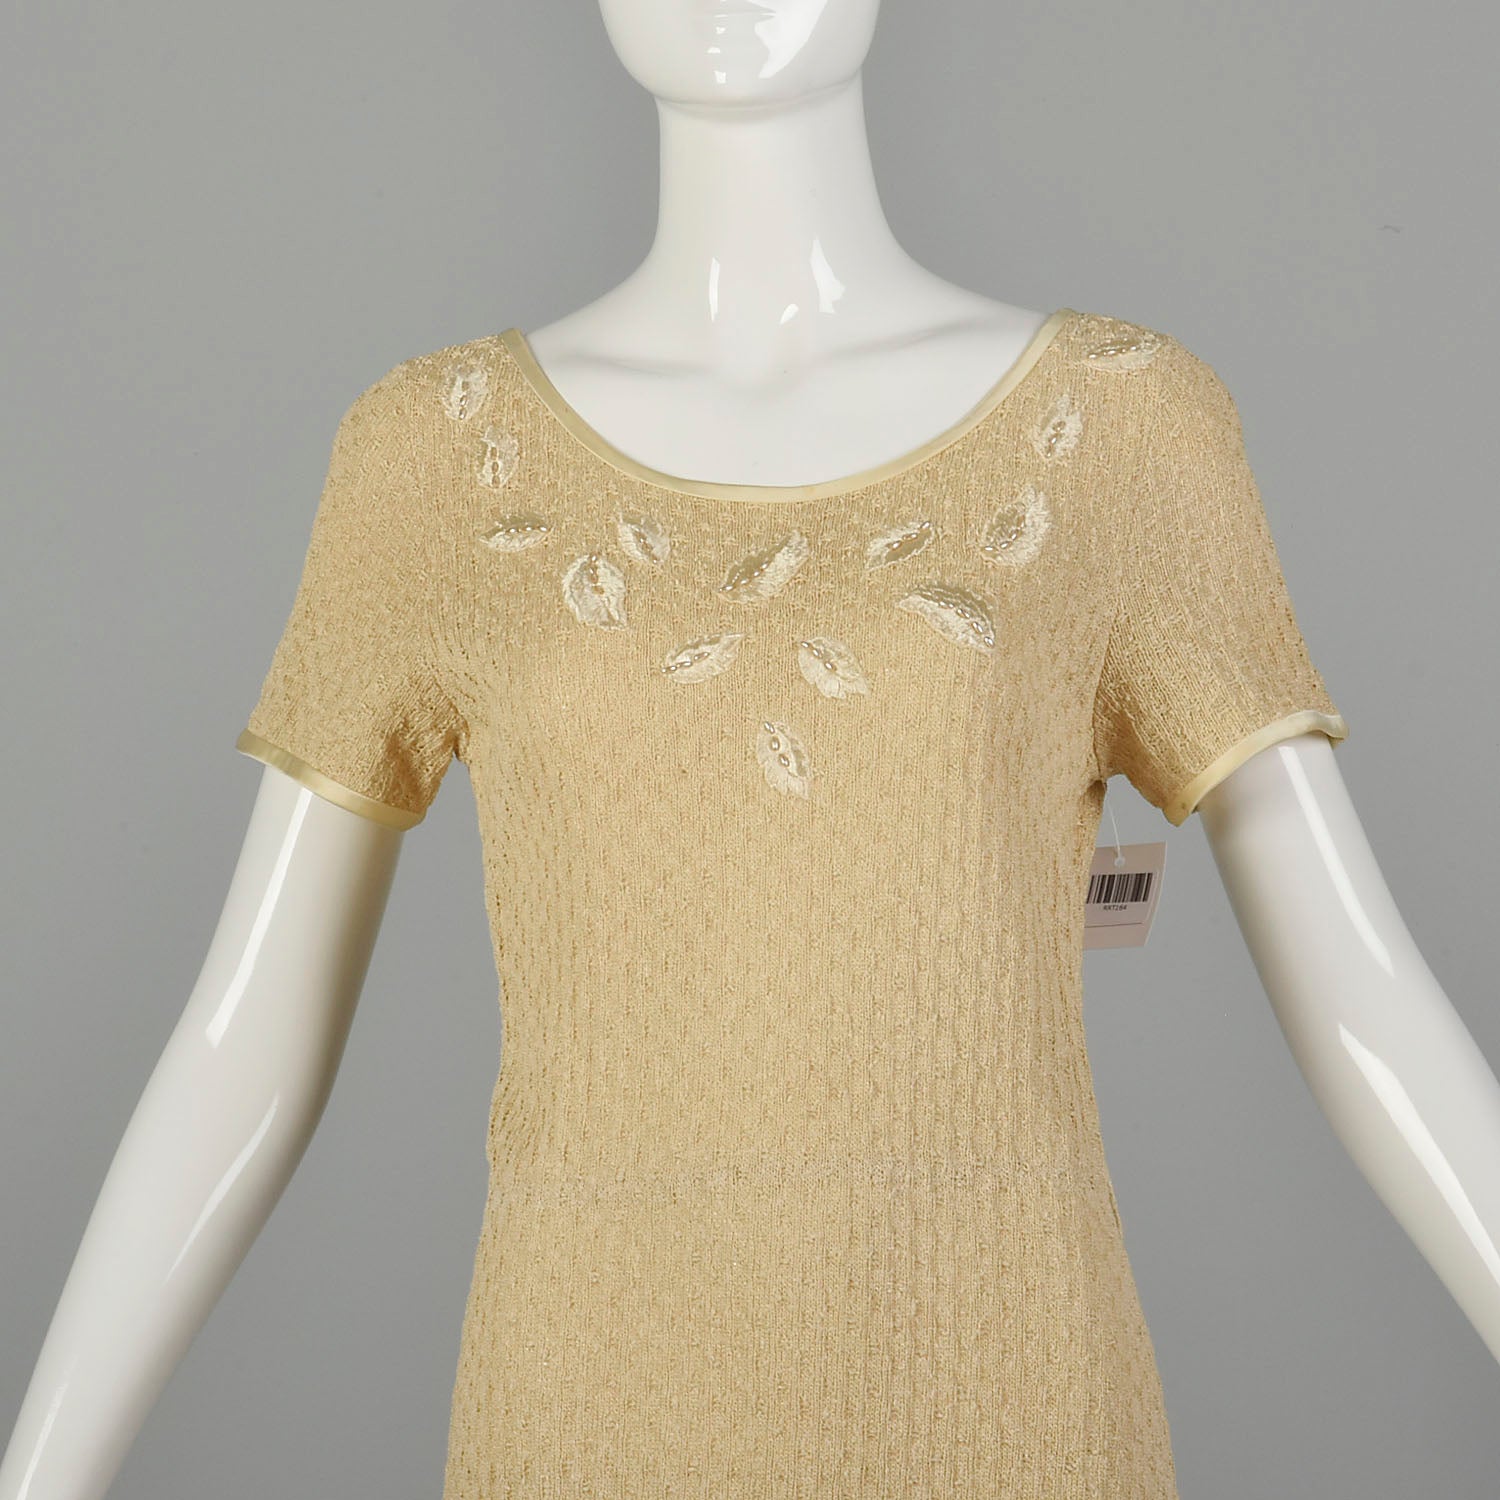 1970s Boho Tan Knit Dress Casual Summer Short Sleeve Modest